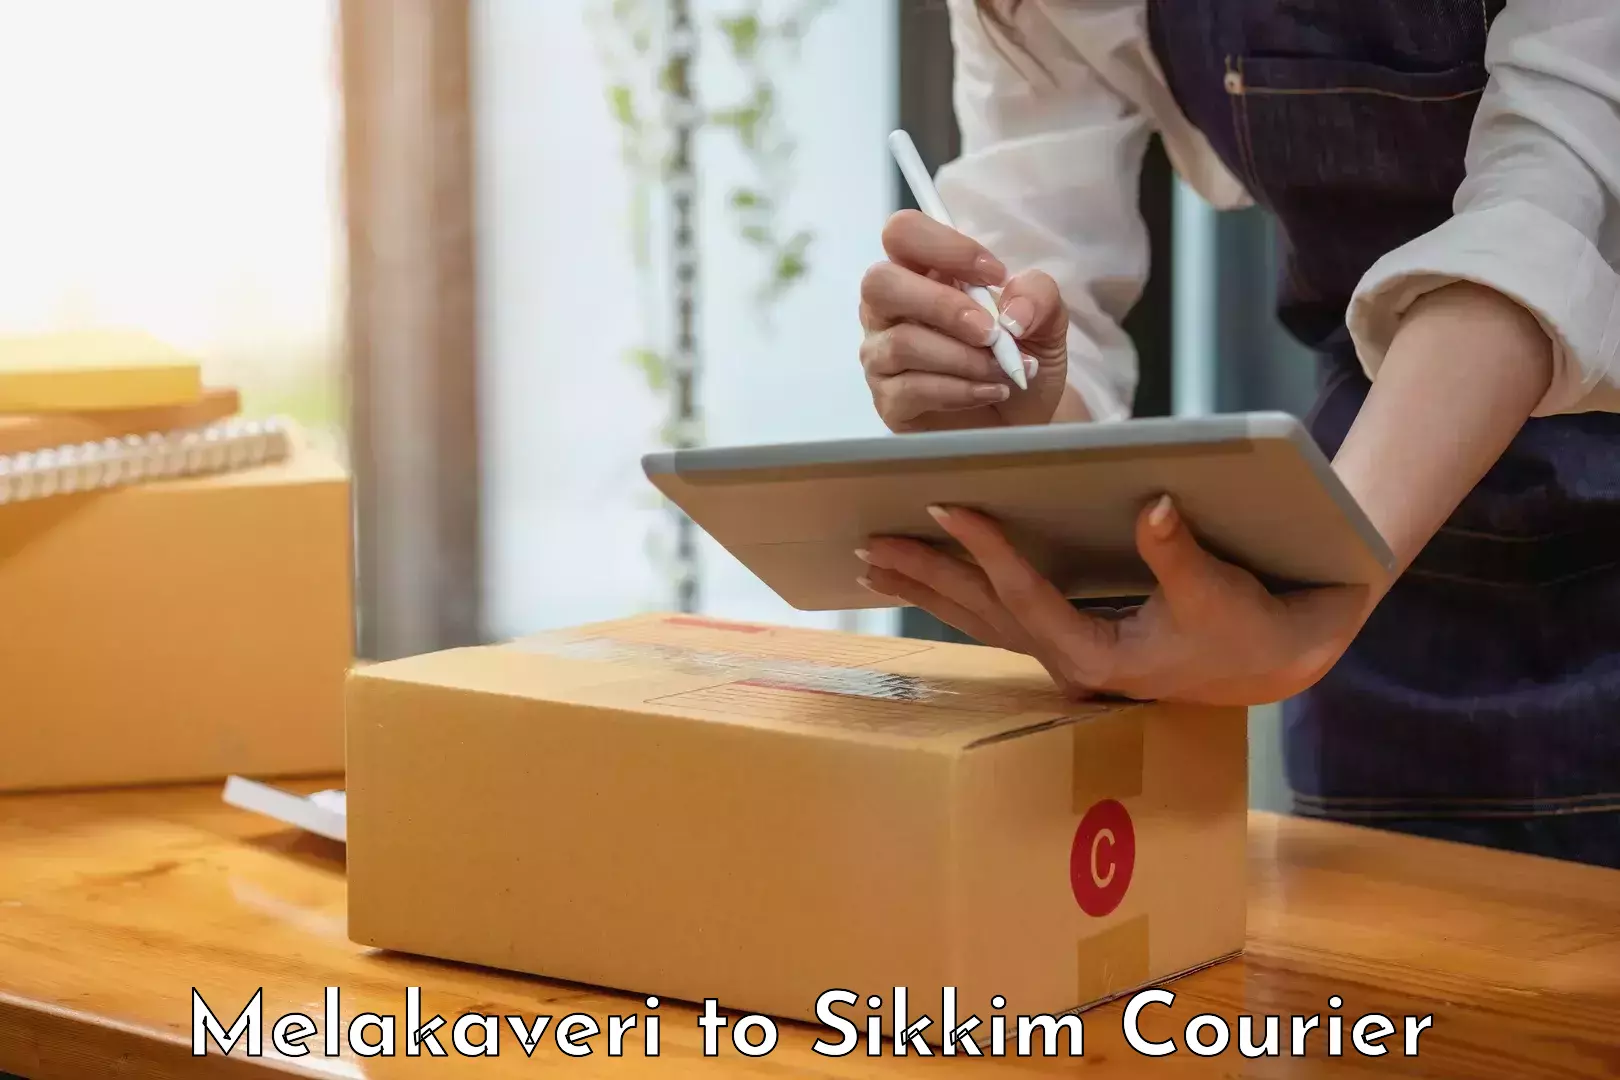 Bulk courier orders Melakaveri to Sikkim